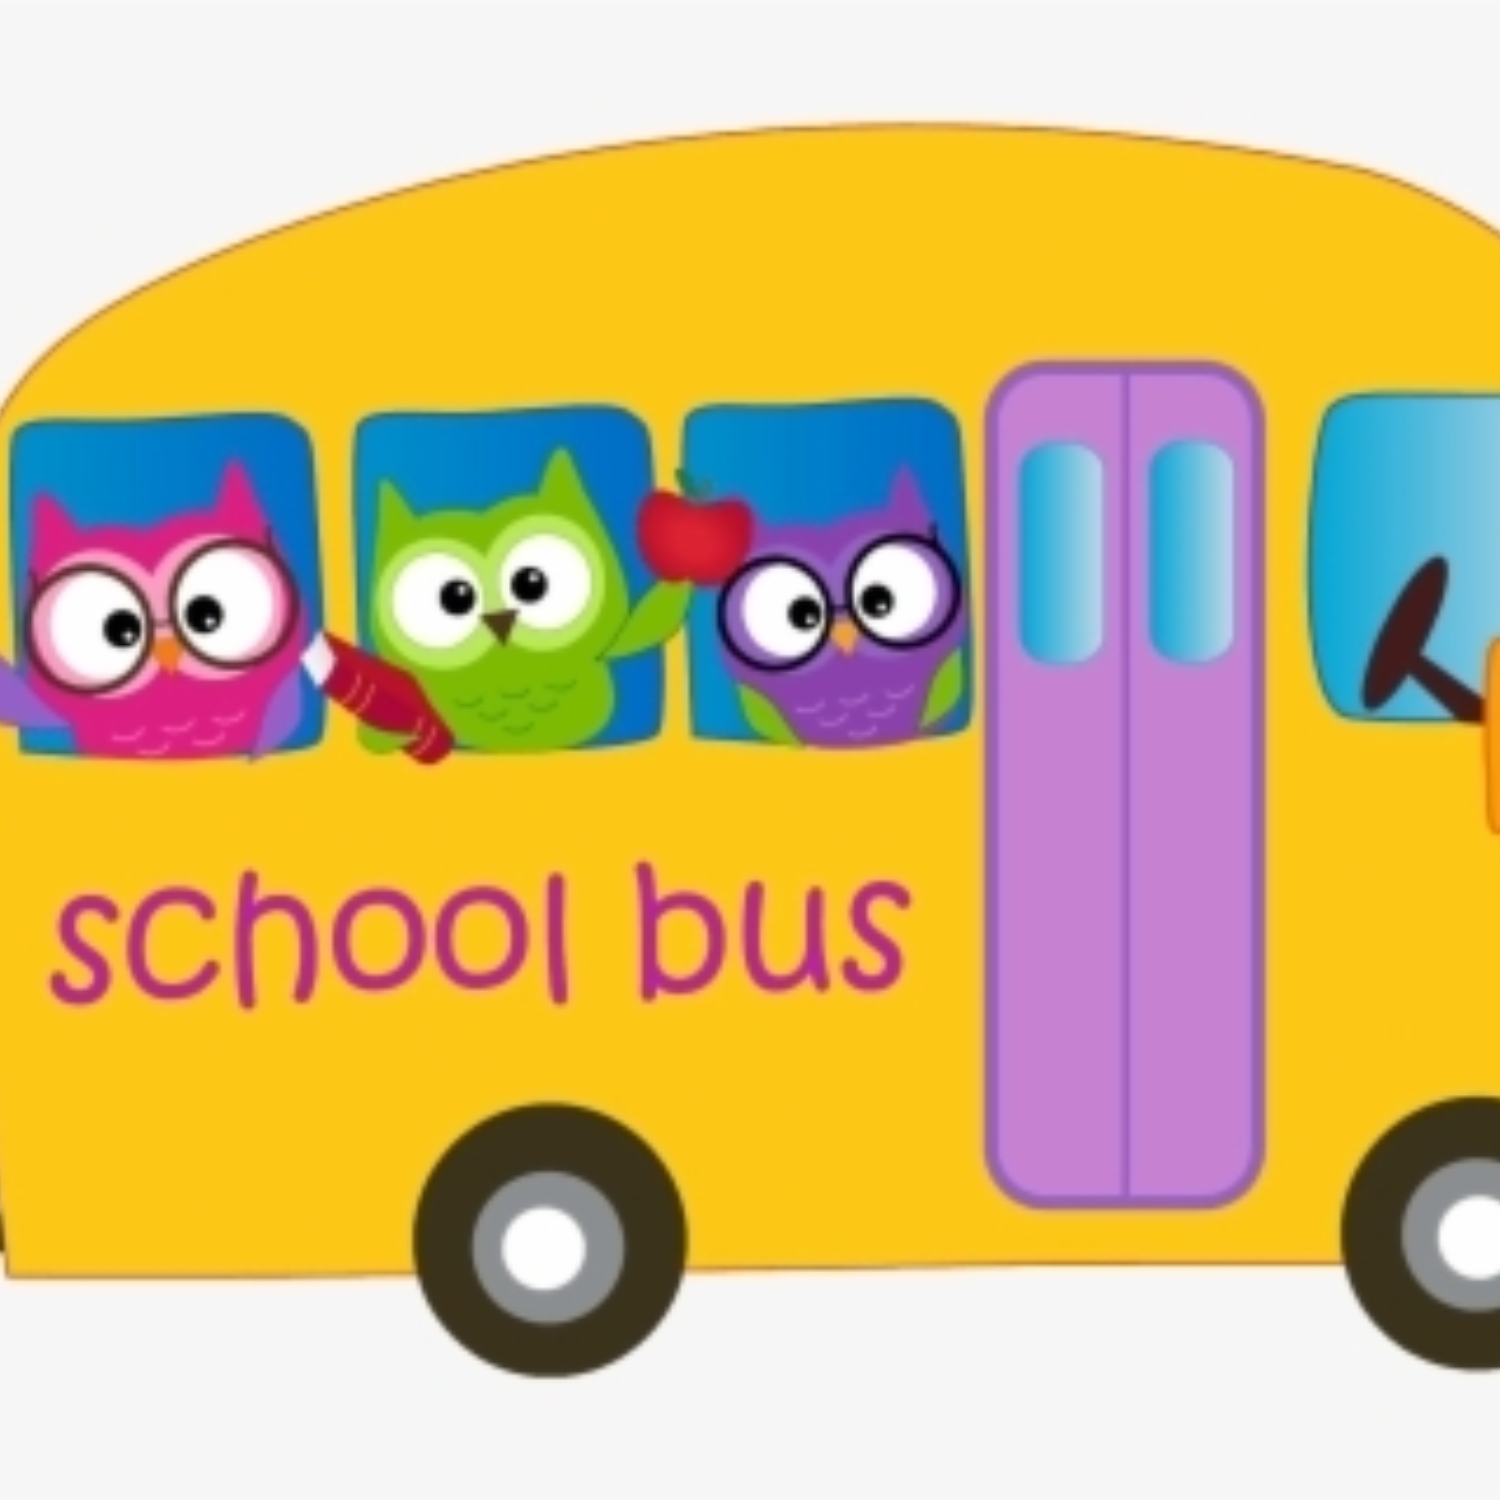 12 123642 bus service owl school bus clipart png